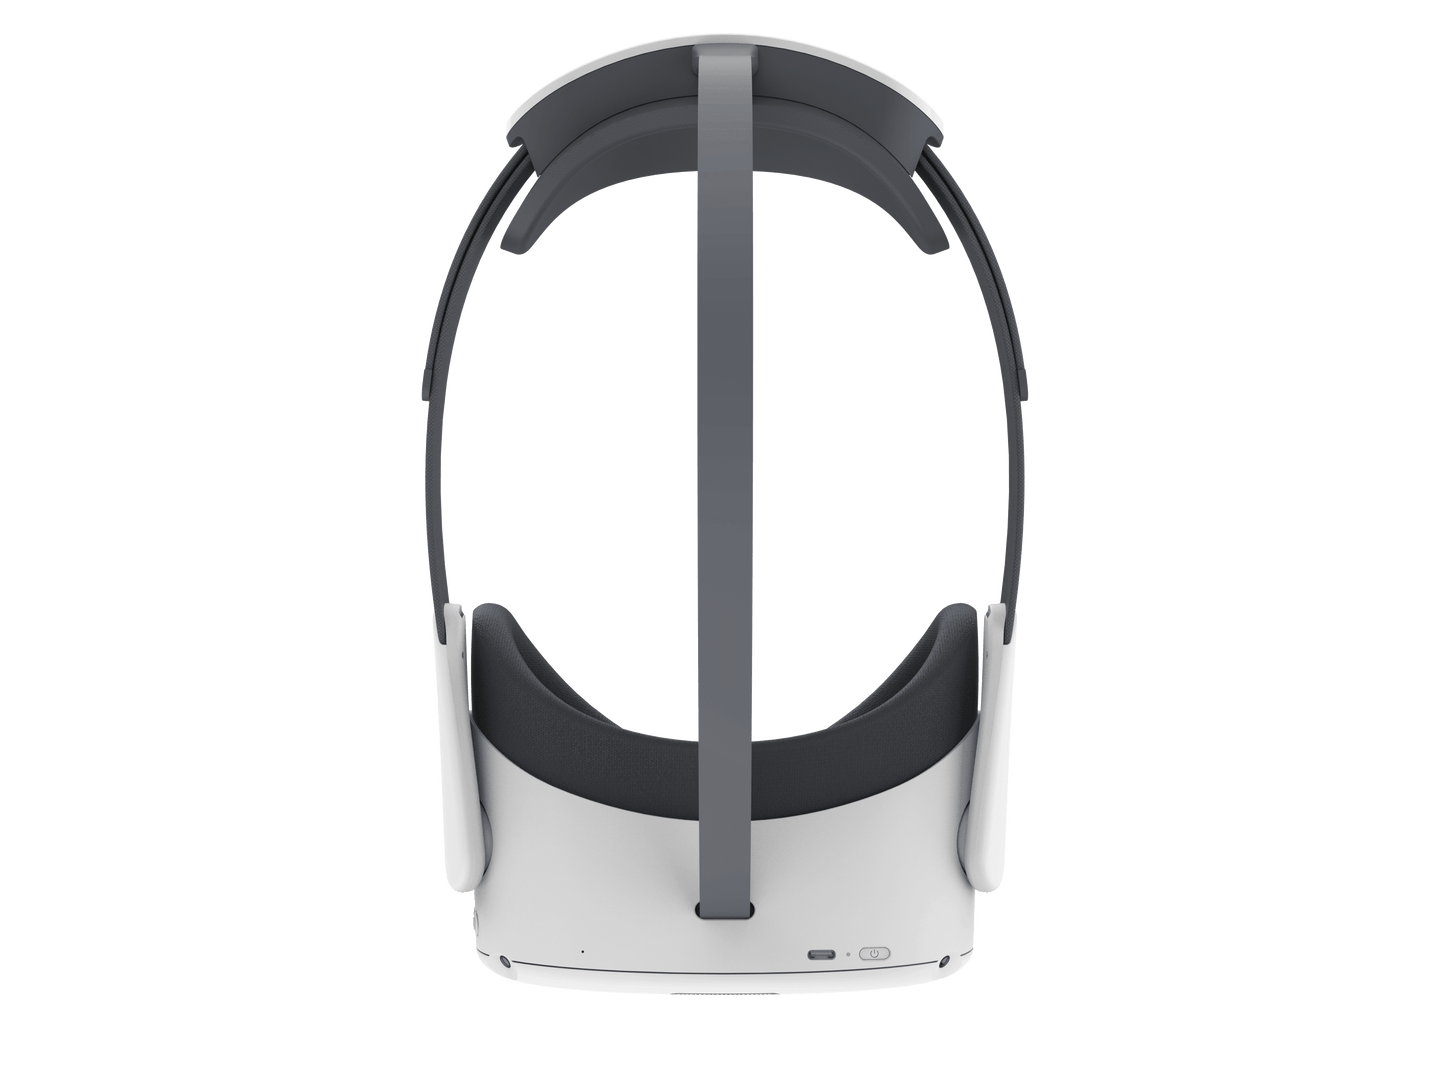 Pico Neo 3 (lunettes de réalité virtuelle)